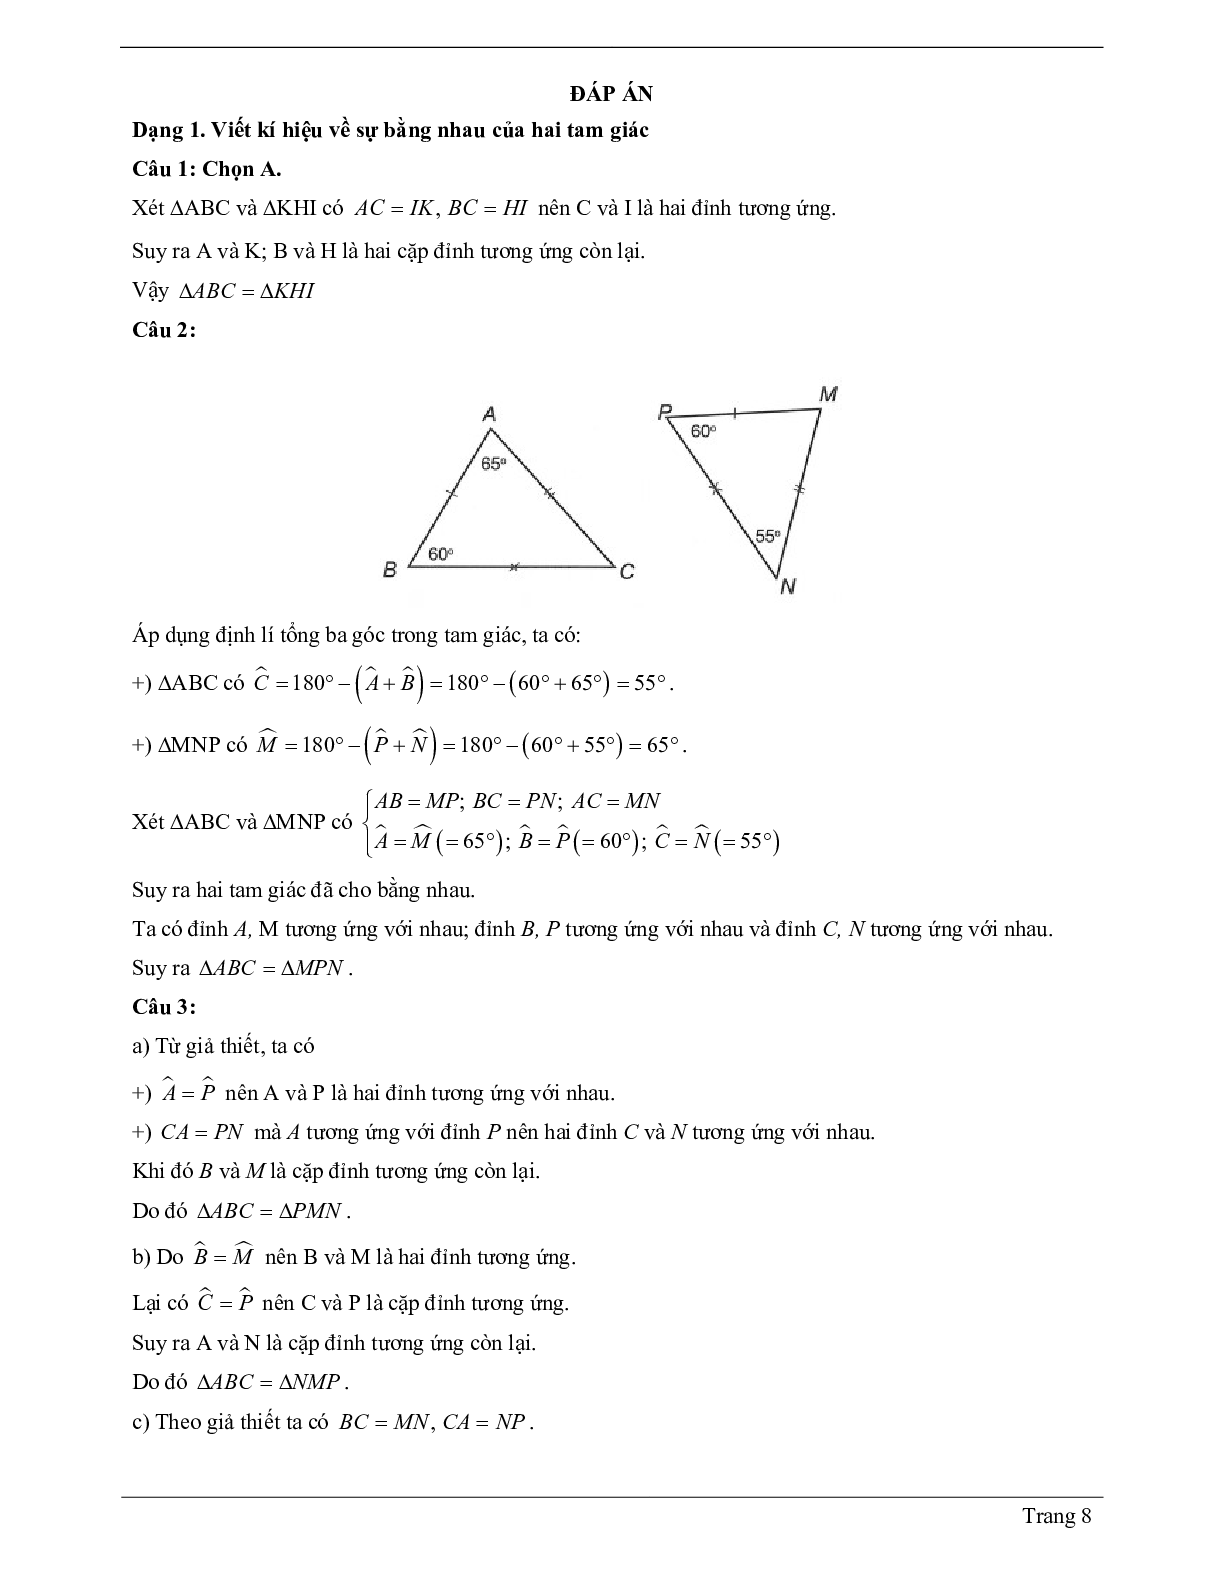 Lý thuyết Toán 7 có đáp án: Hai tam giác bằng nhau (trang 8)